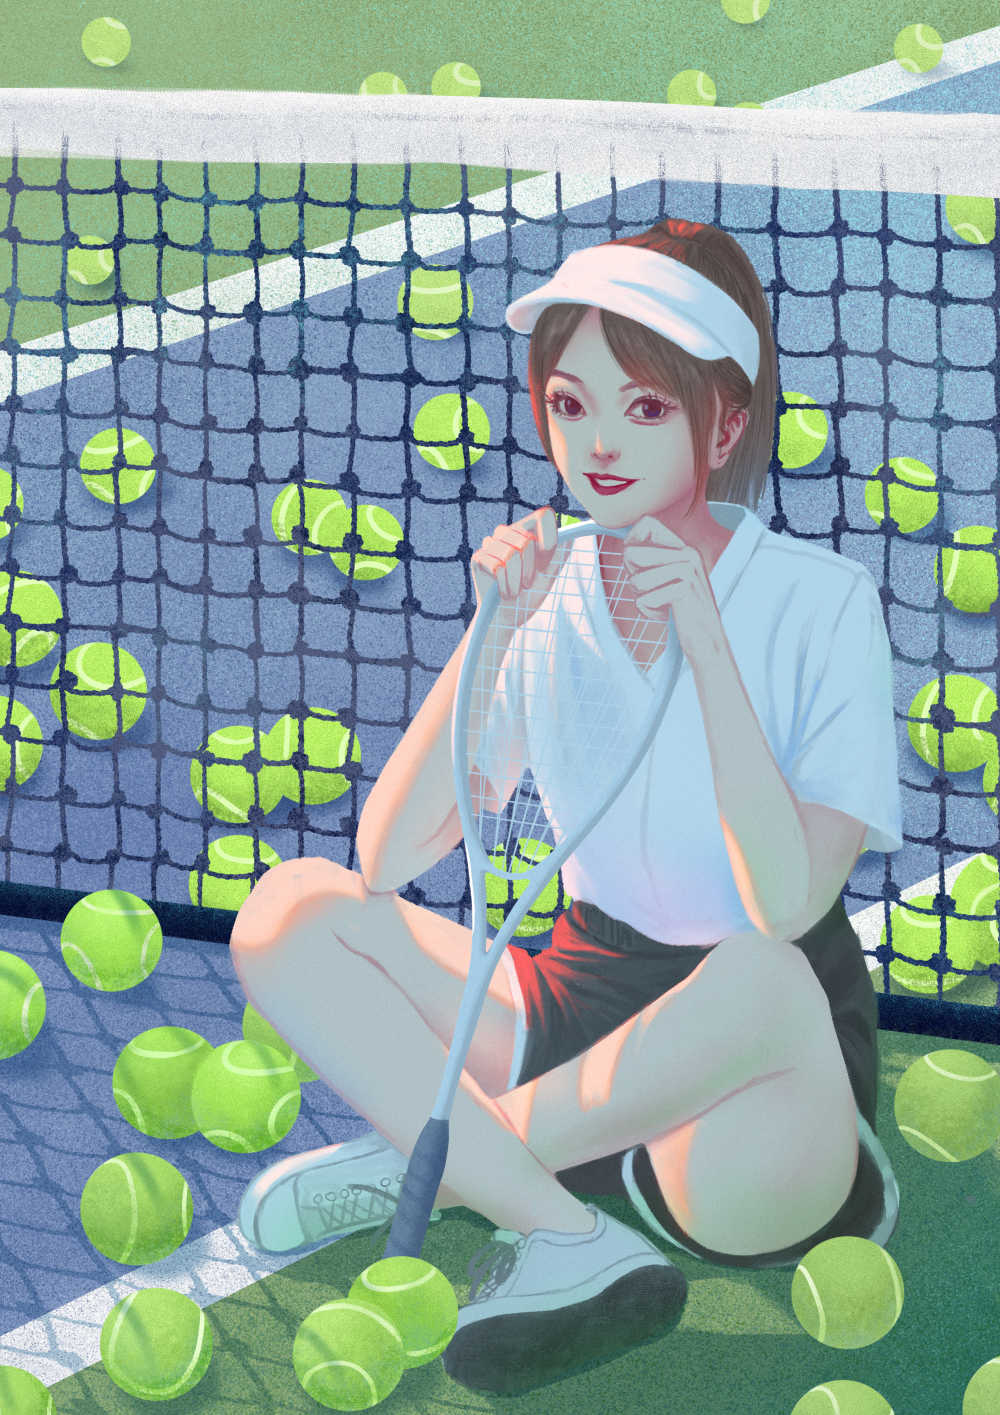 坐在网球场上拿网球球拍运动少女